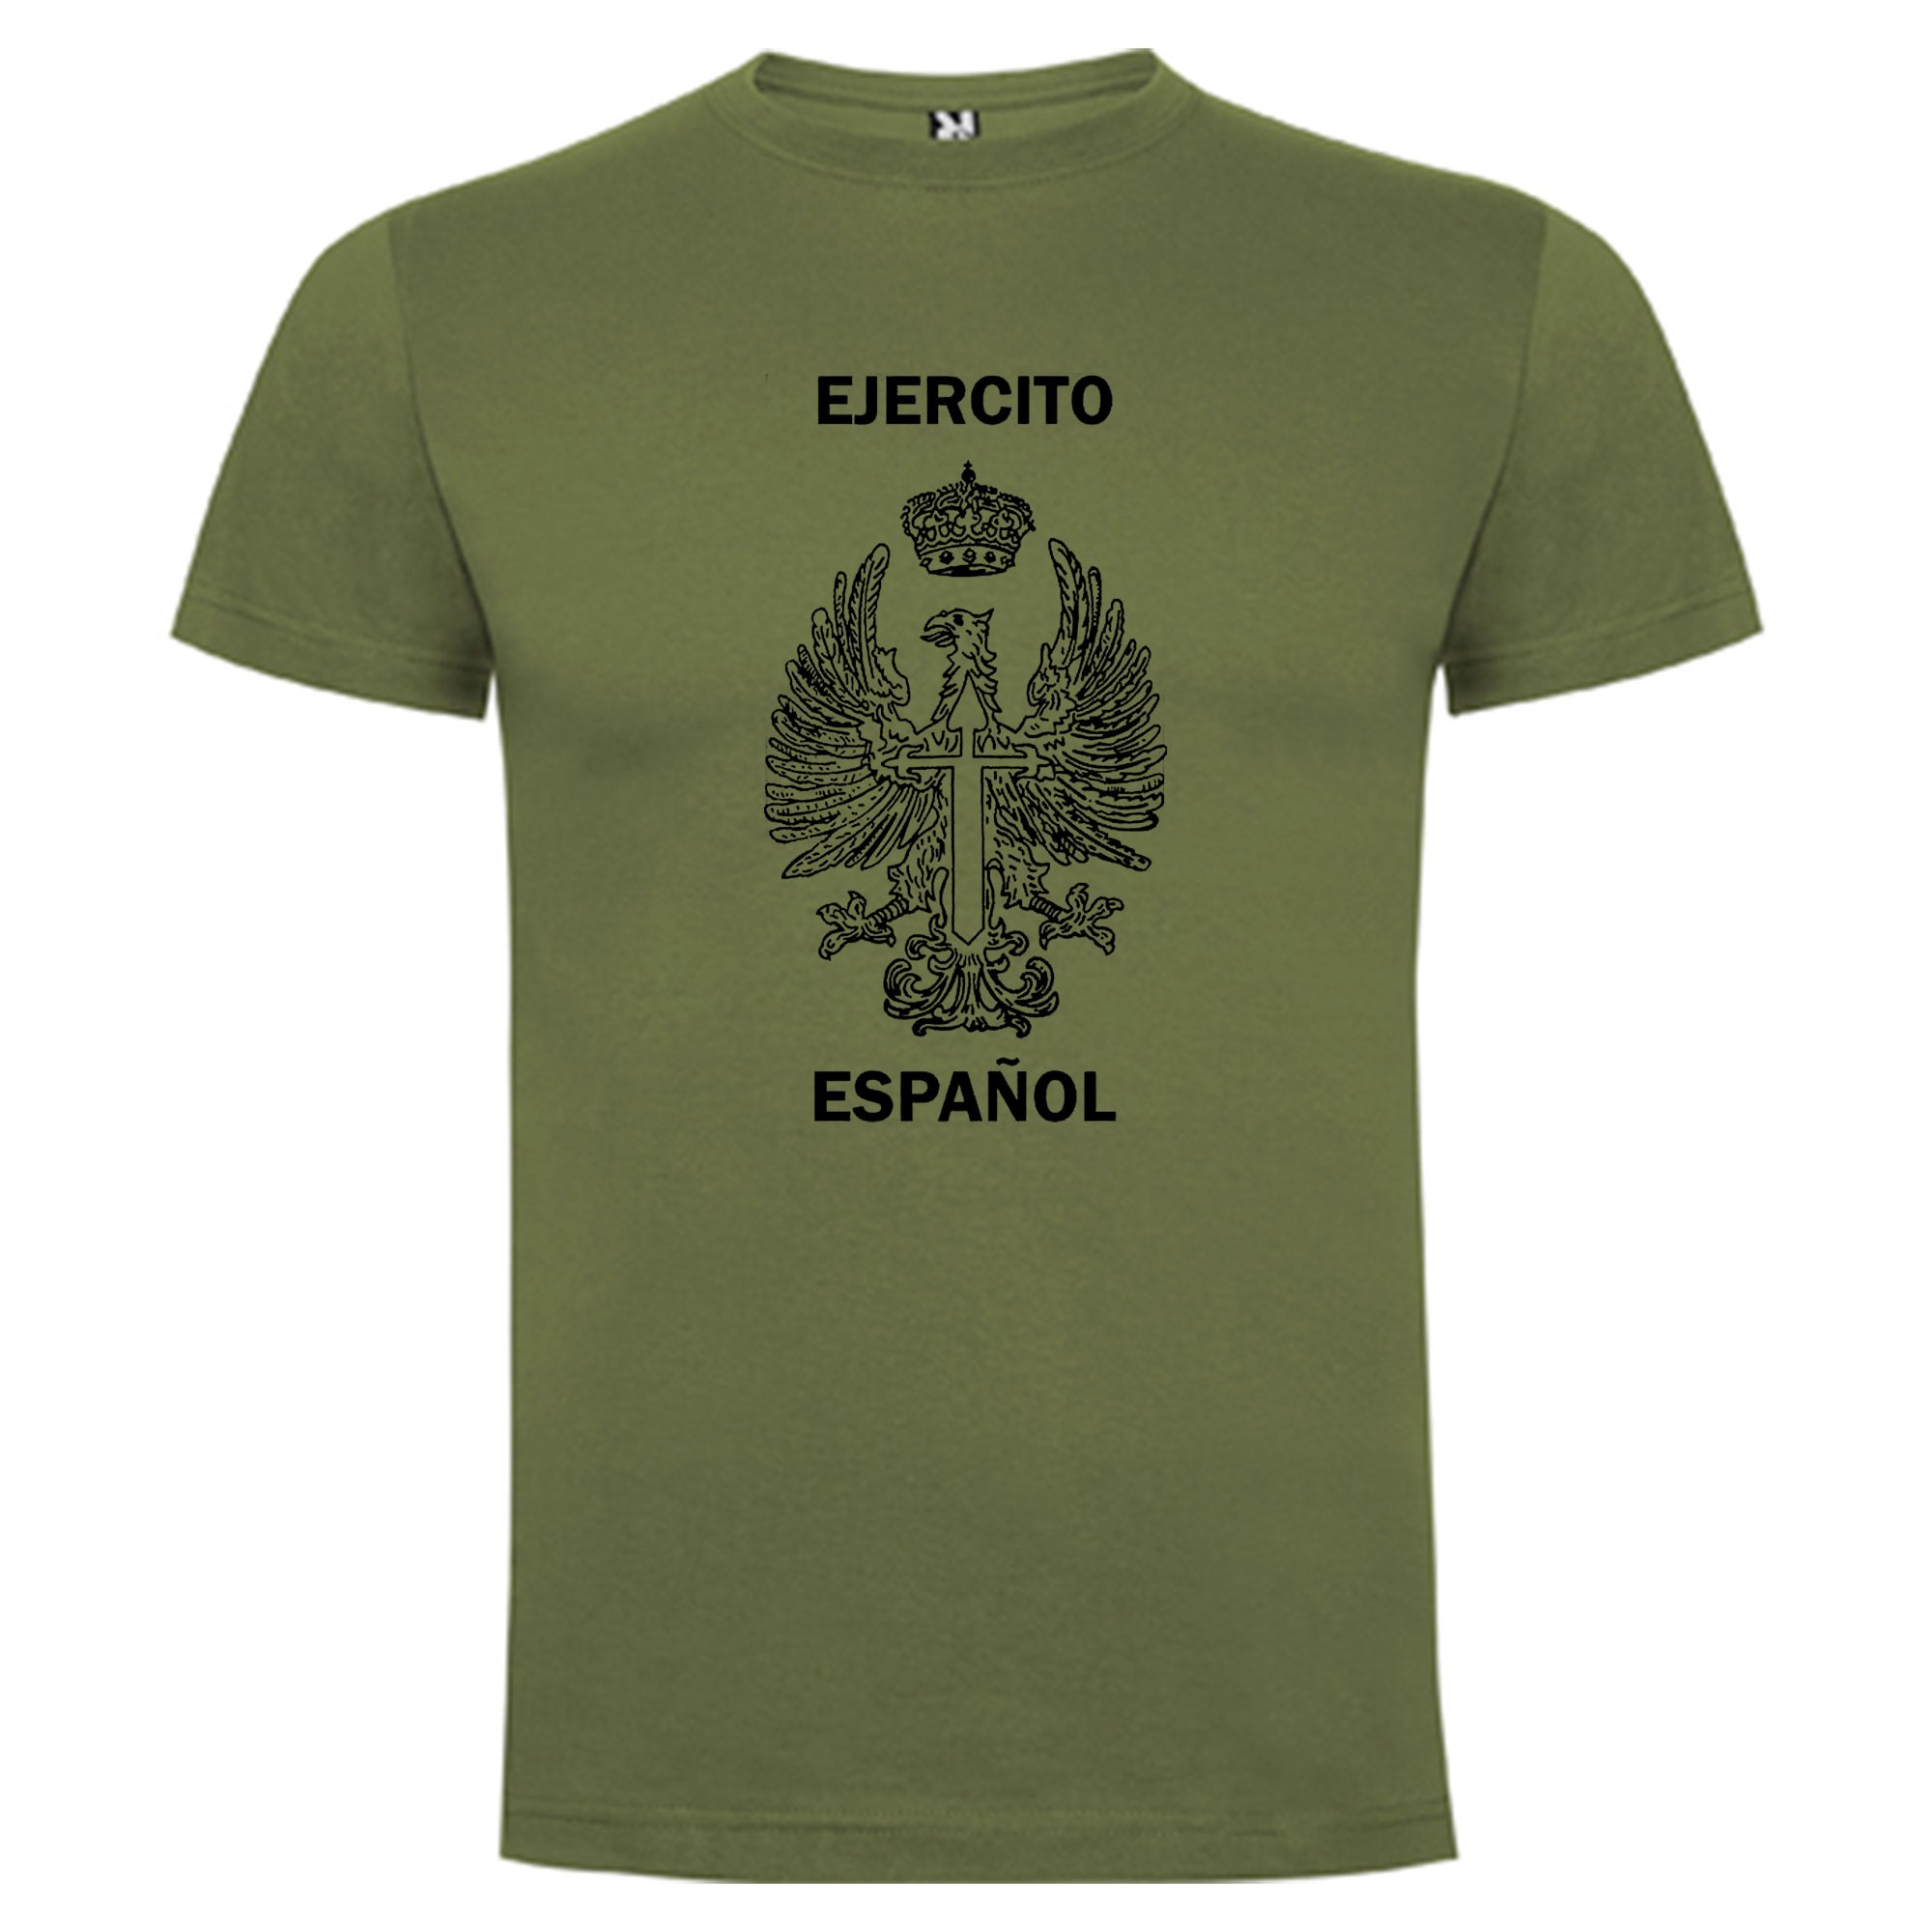 Camiseta técnica militar Ejercito Español – Tienda Militar